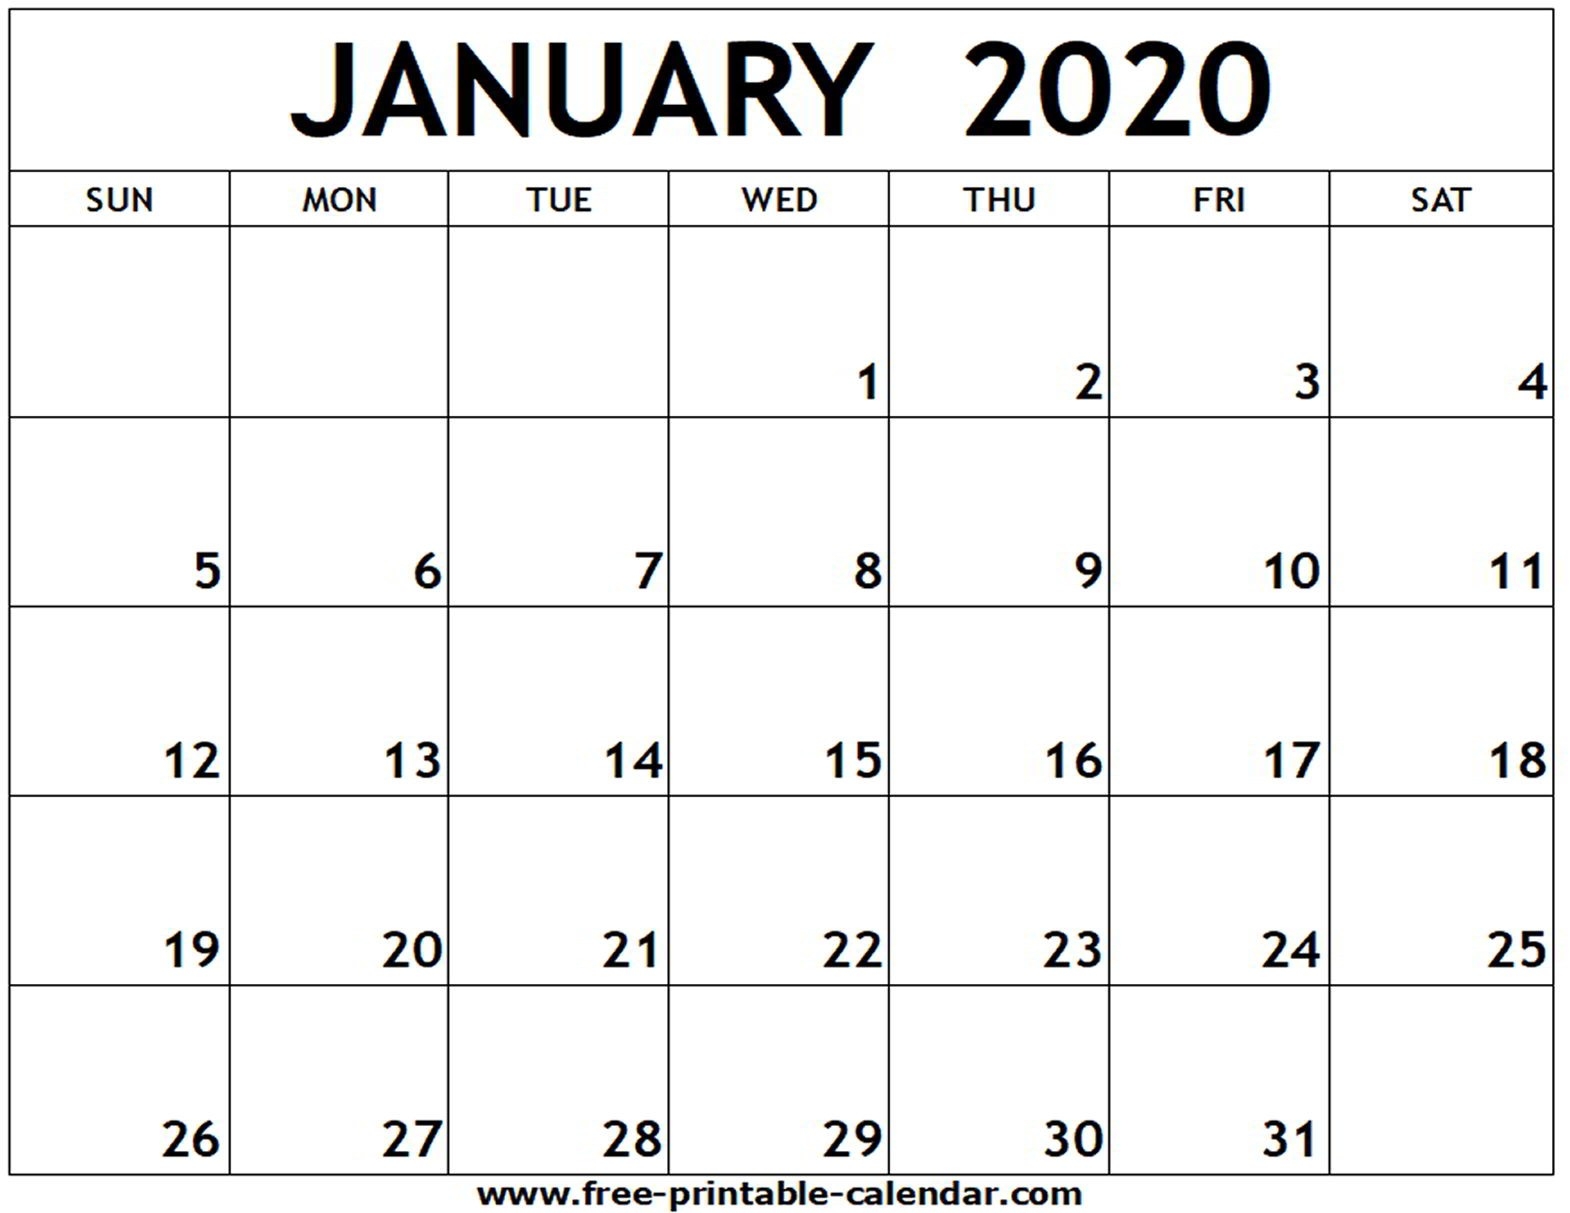 January 2020 Printable Calendar - Free-Printable-Calendar-Printable Calendar January 2020